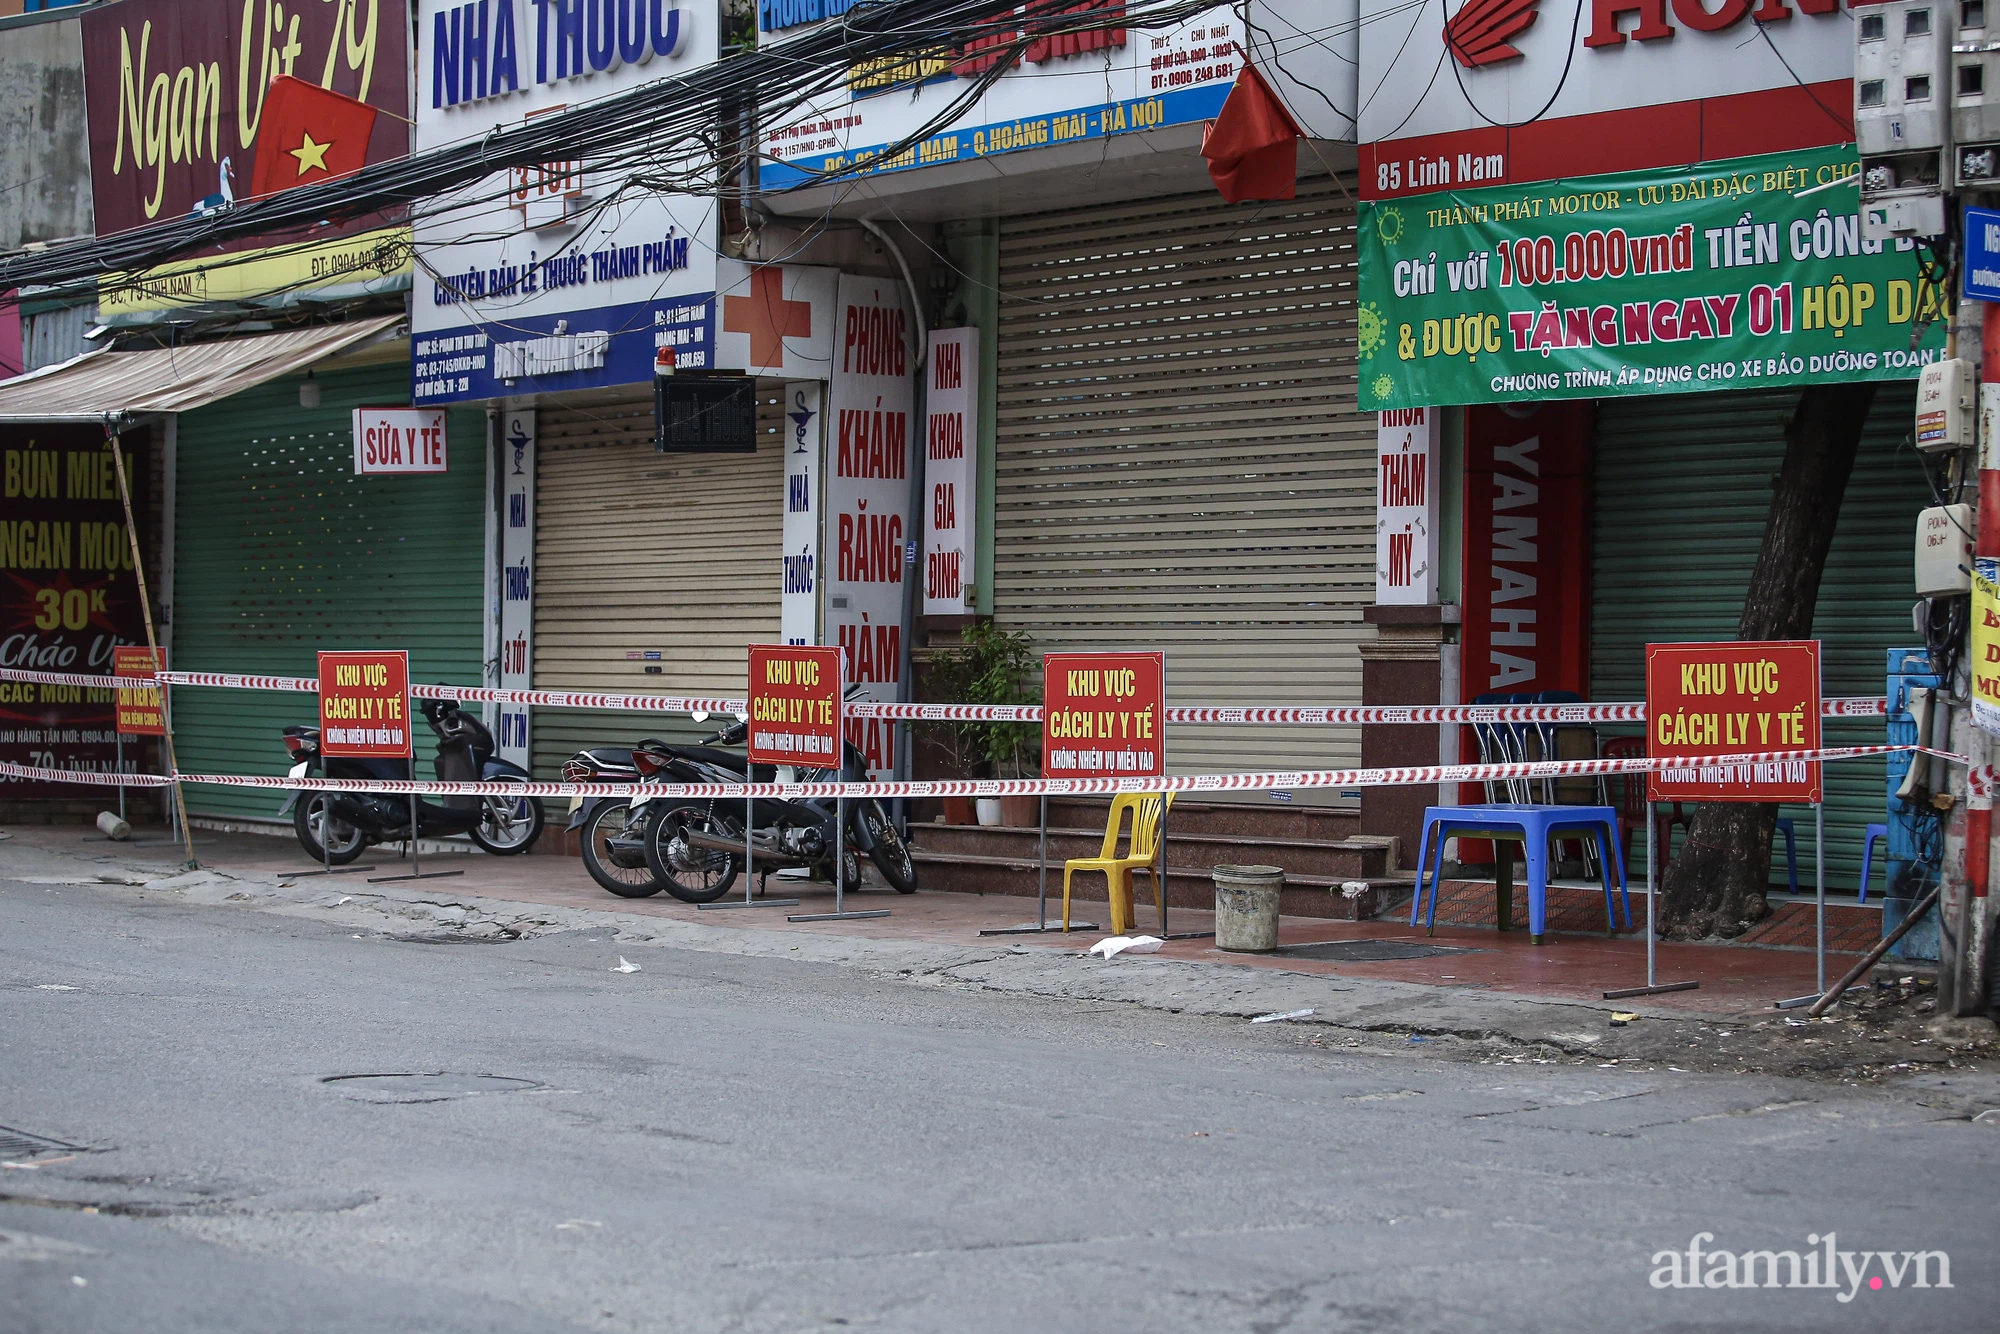 Hà Nội: Phường Mai Động phong tỏa 1 chung cư và nhiều cửa hàng kinh doanh tại đường Lĩnh Nam trong cùng một ngày - Ảnh 4.